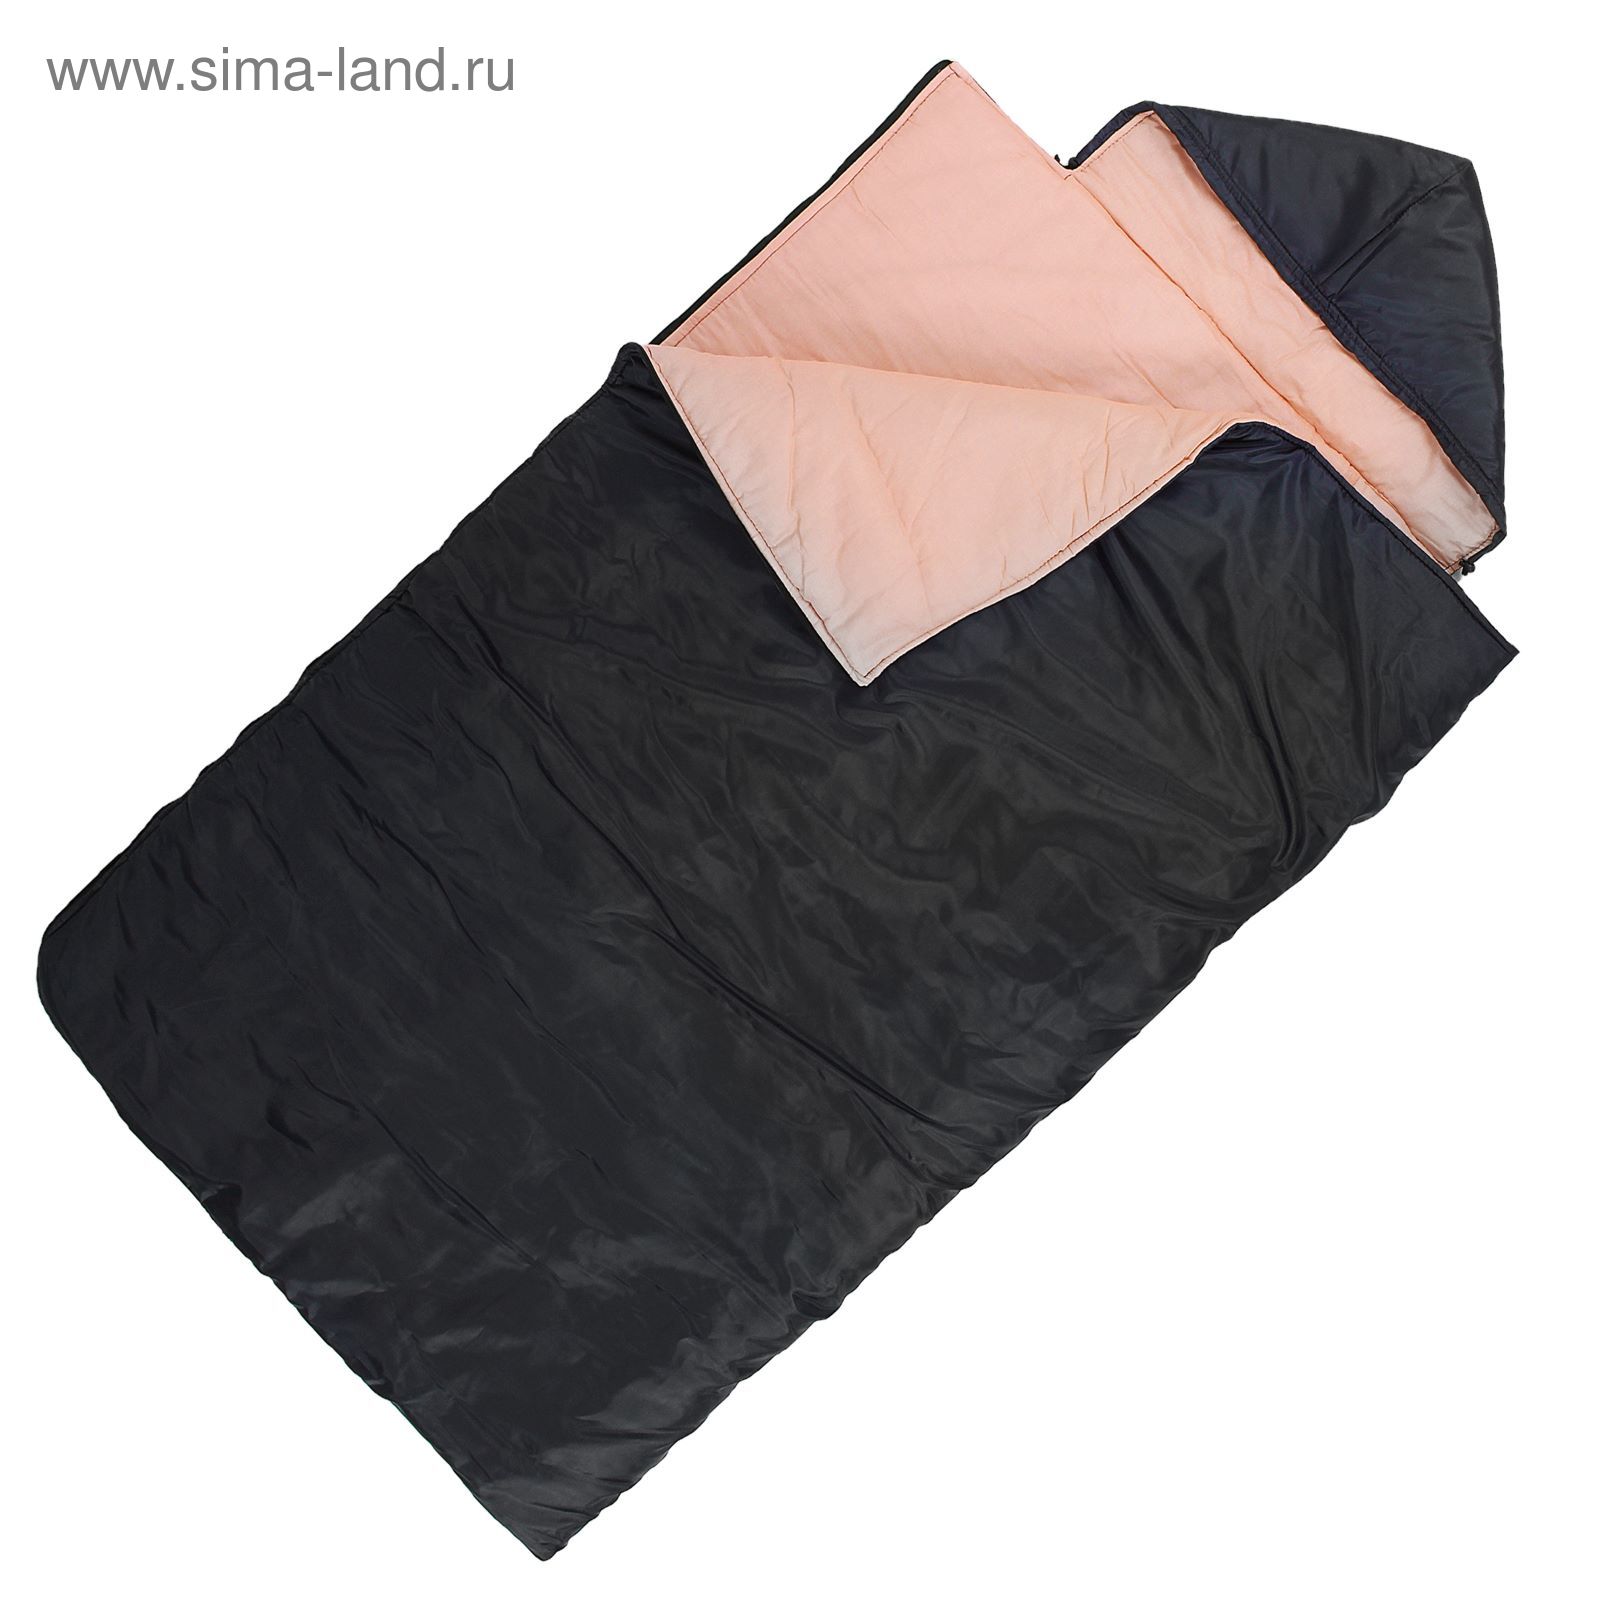 Спальный мешок "Комфорт", 4-х слойный, с капюшоном, размер 225 х 105 см, цвет микс